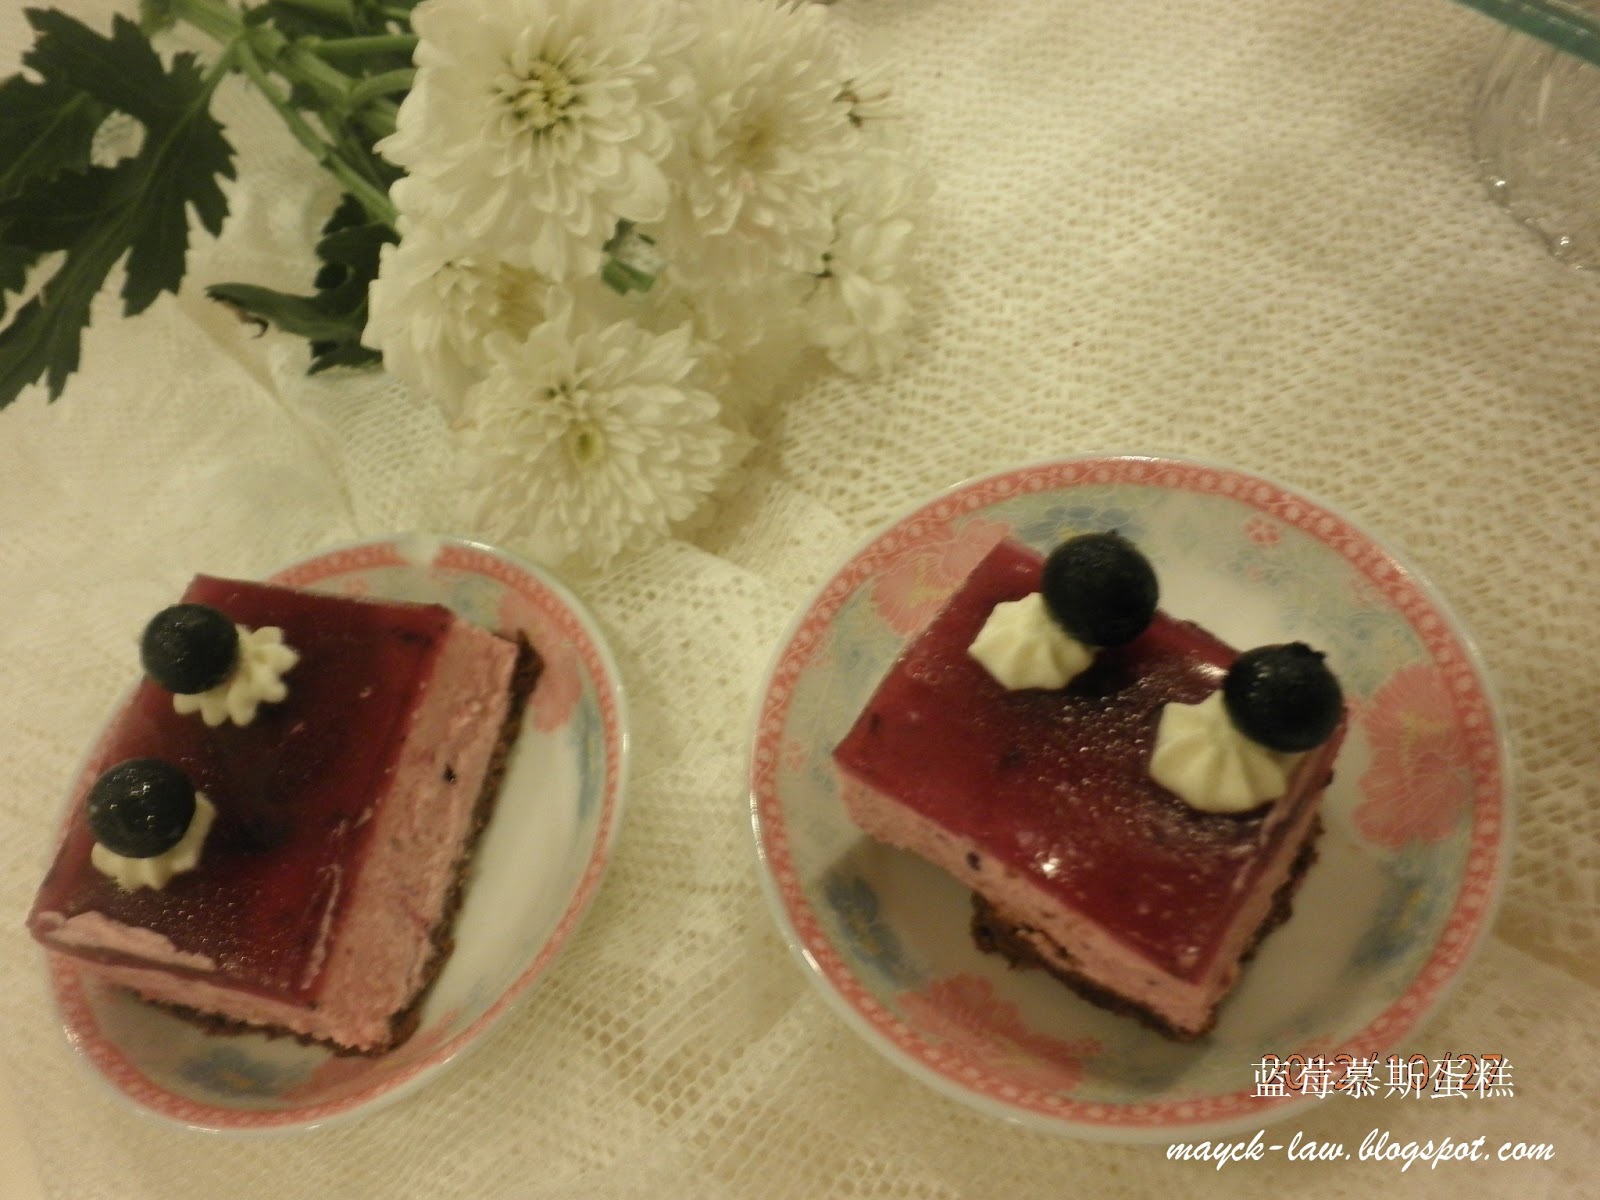 蓝莓树莓鲜奶慕斯蛋糕照片摄影图片_ID:434539851-Veer图库